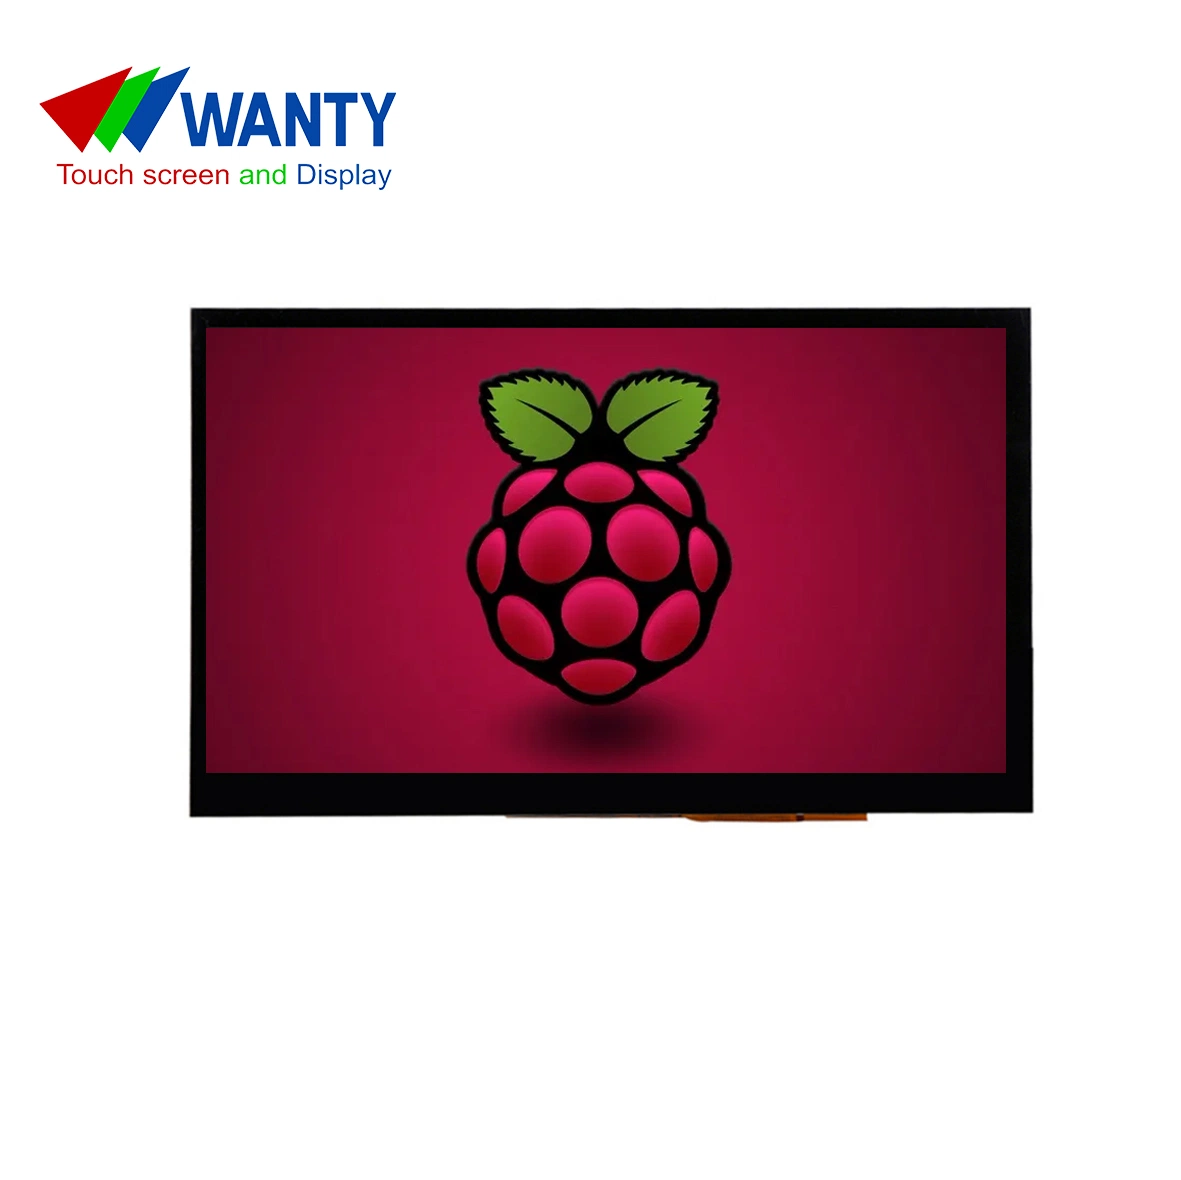 Écran LCD TFT TN capacitif 800x480 GG C-Touch Panel HDMI 7 pouces d'usine Moniteur tactile LCD Raspberry Pi